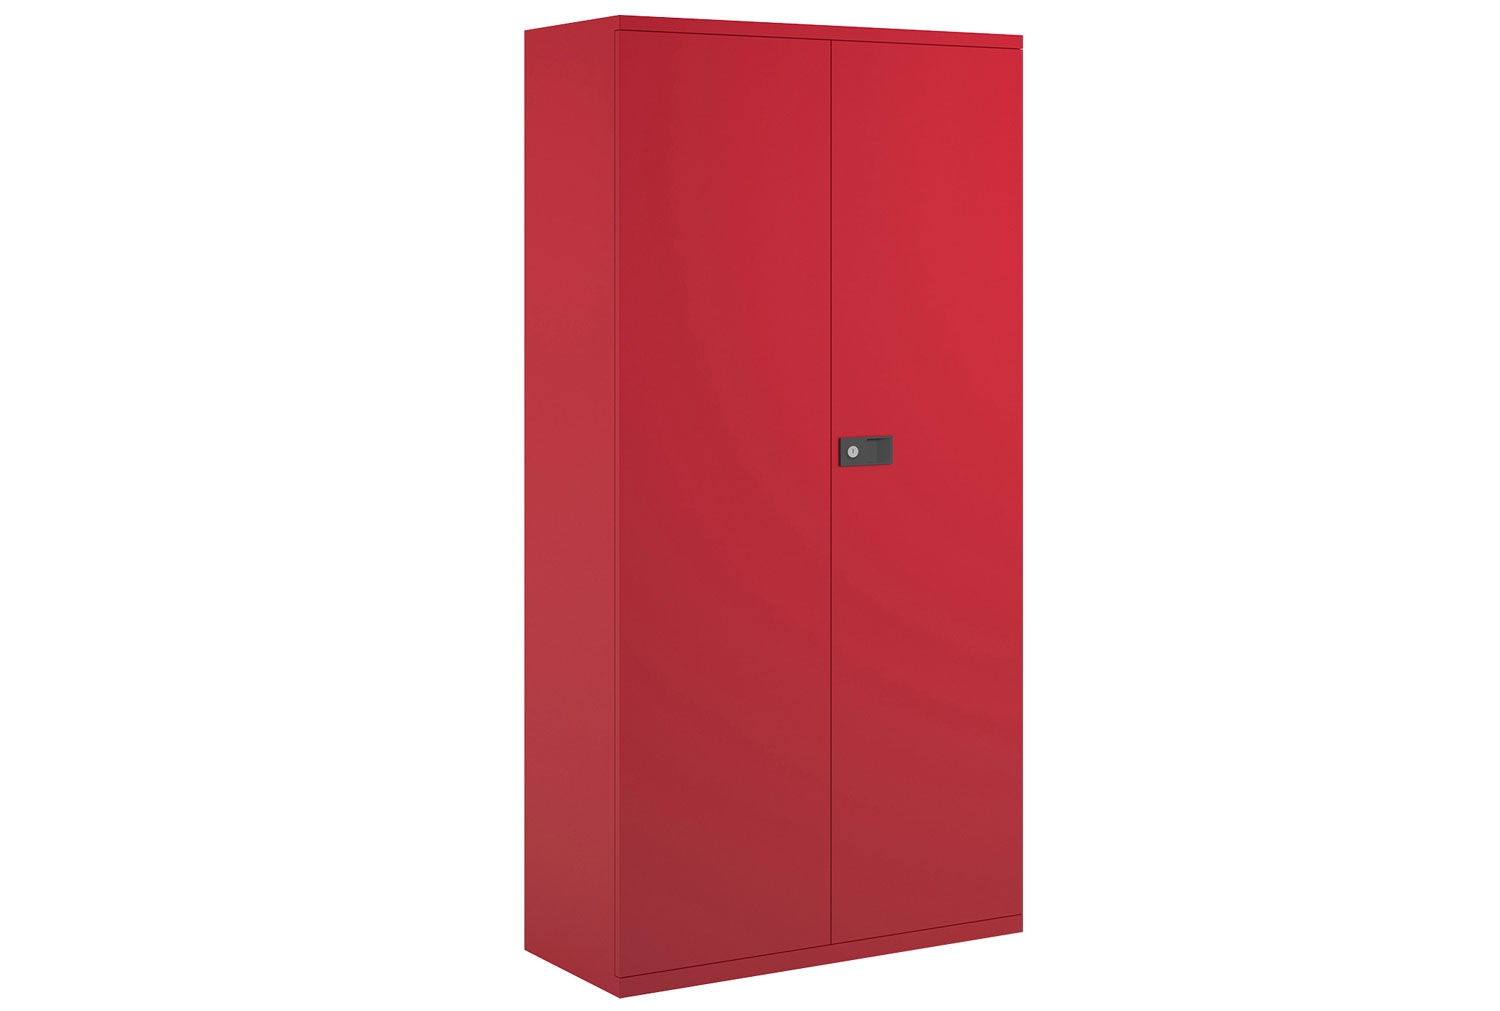 Bisley Economy Double Door Steel Office Cupboards, 4 Shelf - 91wx40dx197h (cm), Red